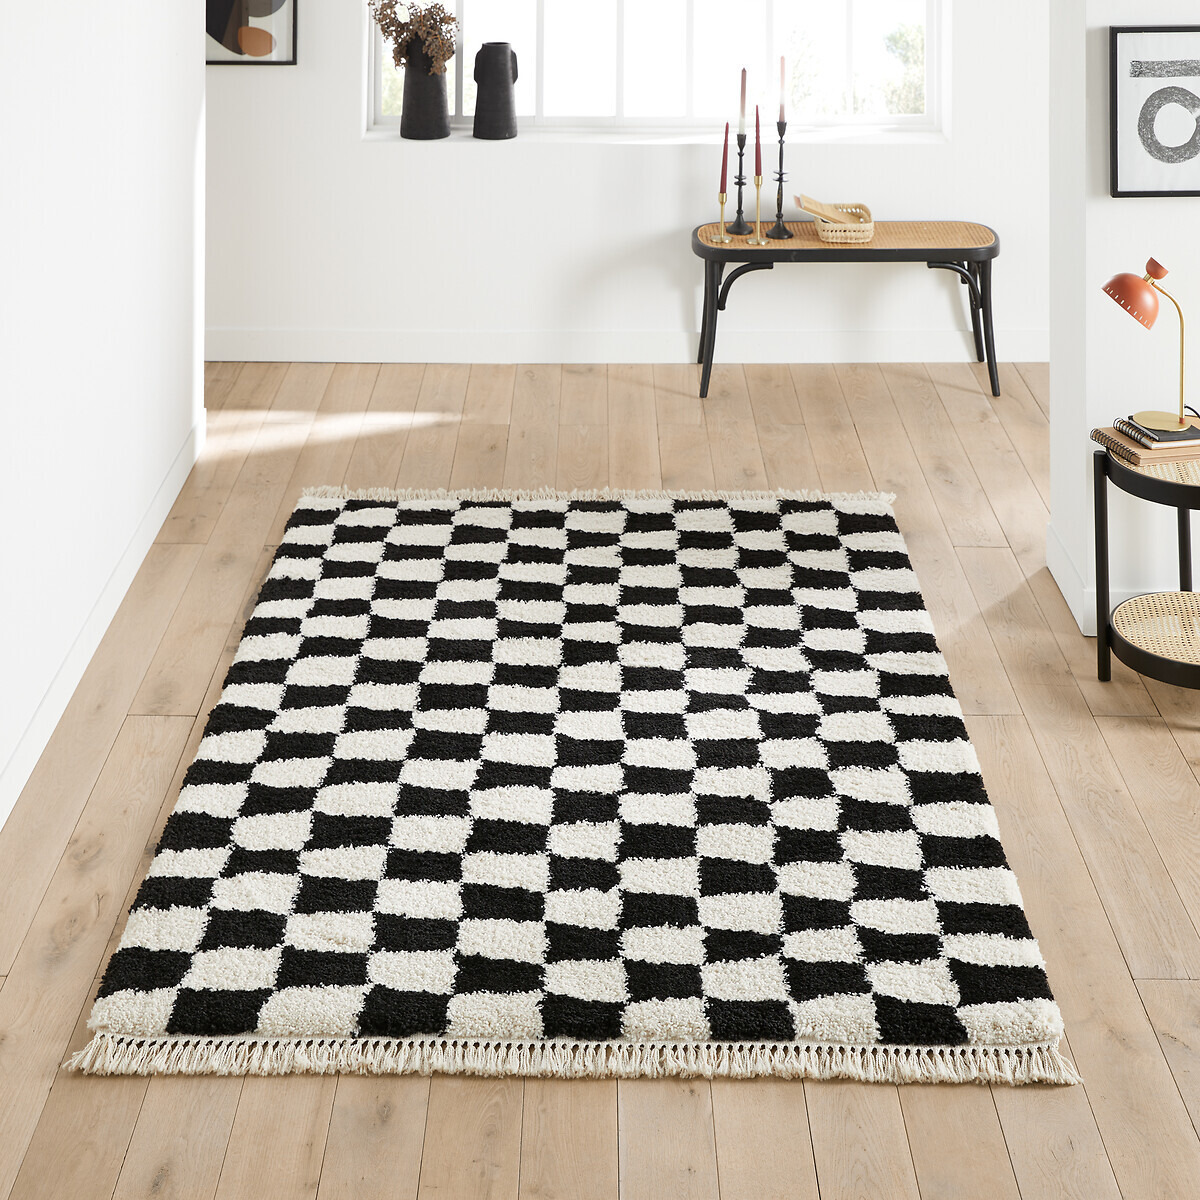 Danito Checkerboard Rug - image 1